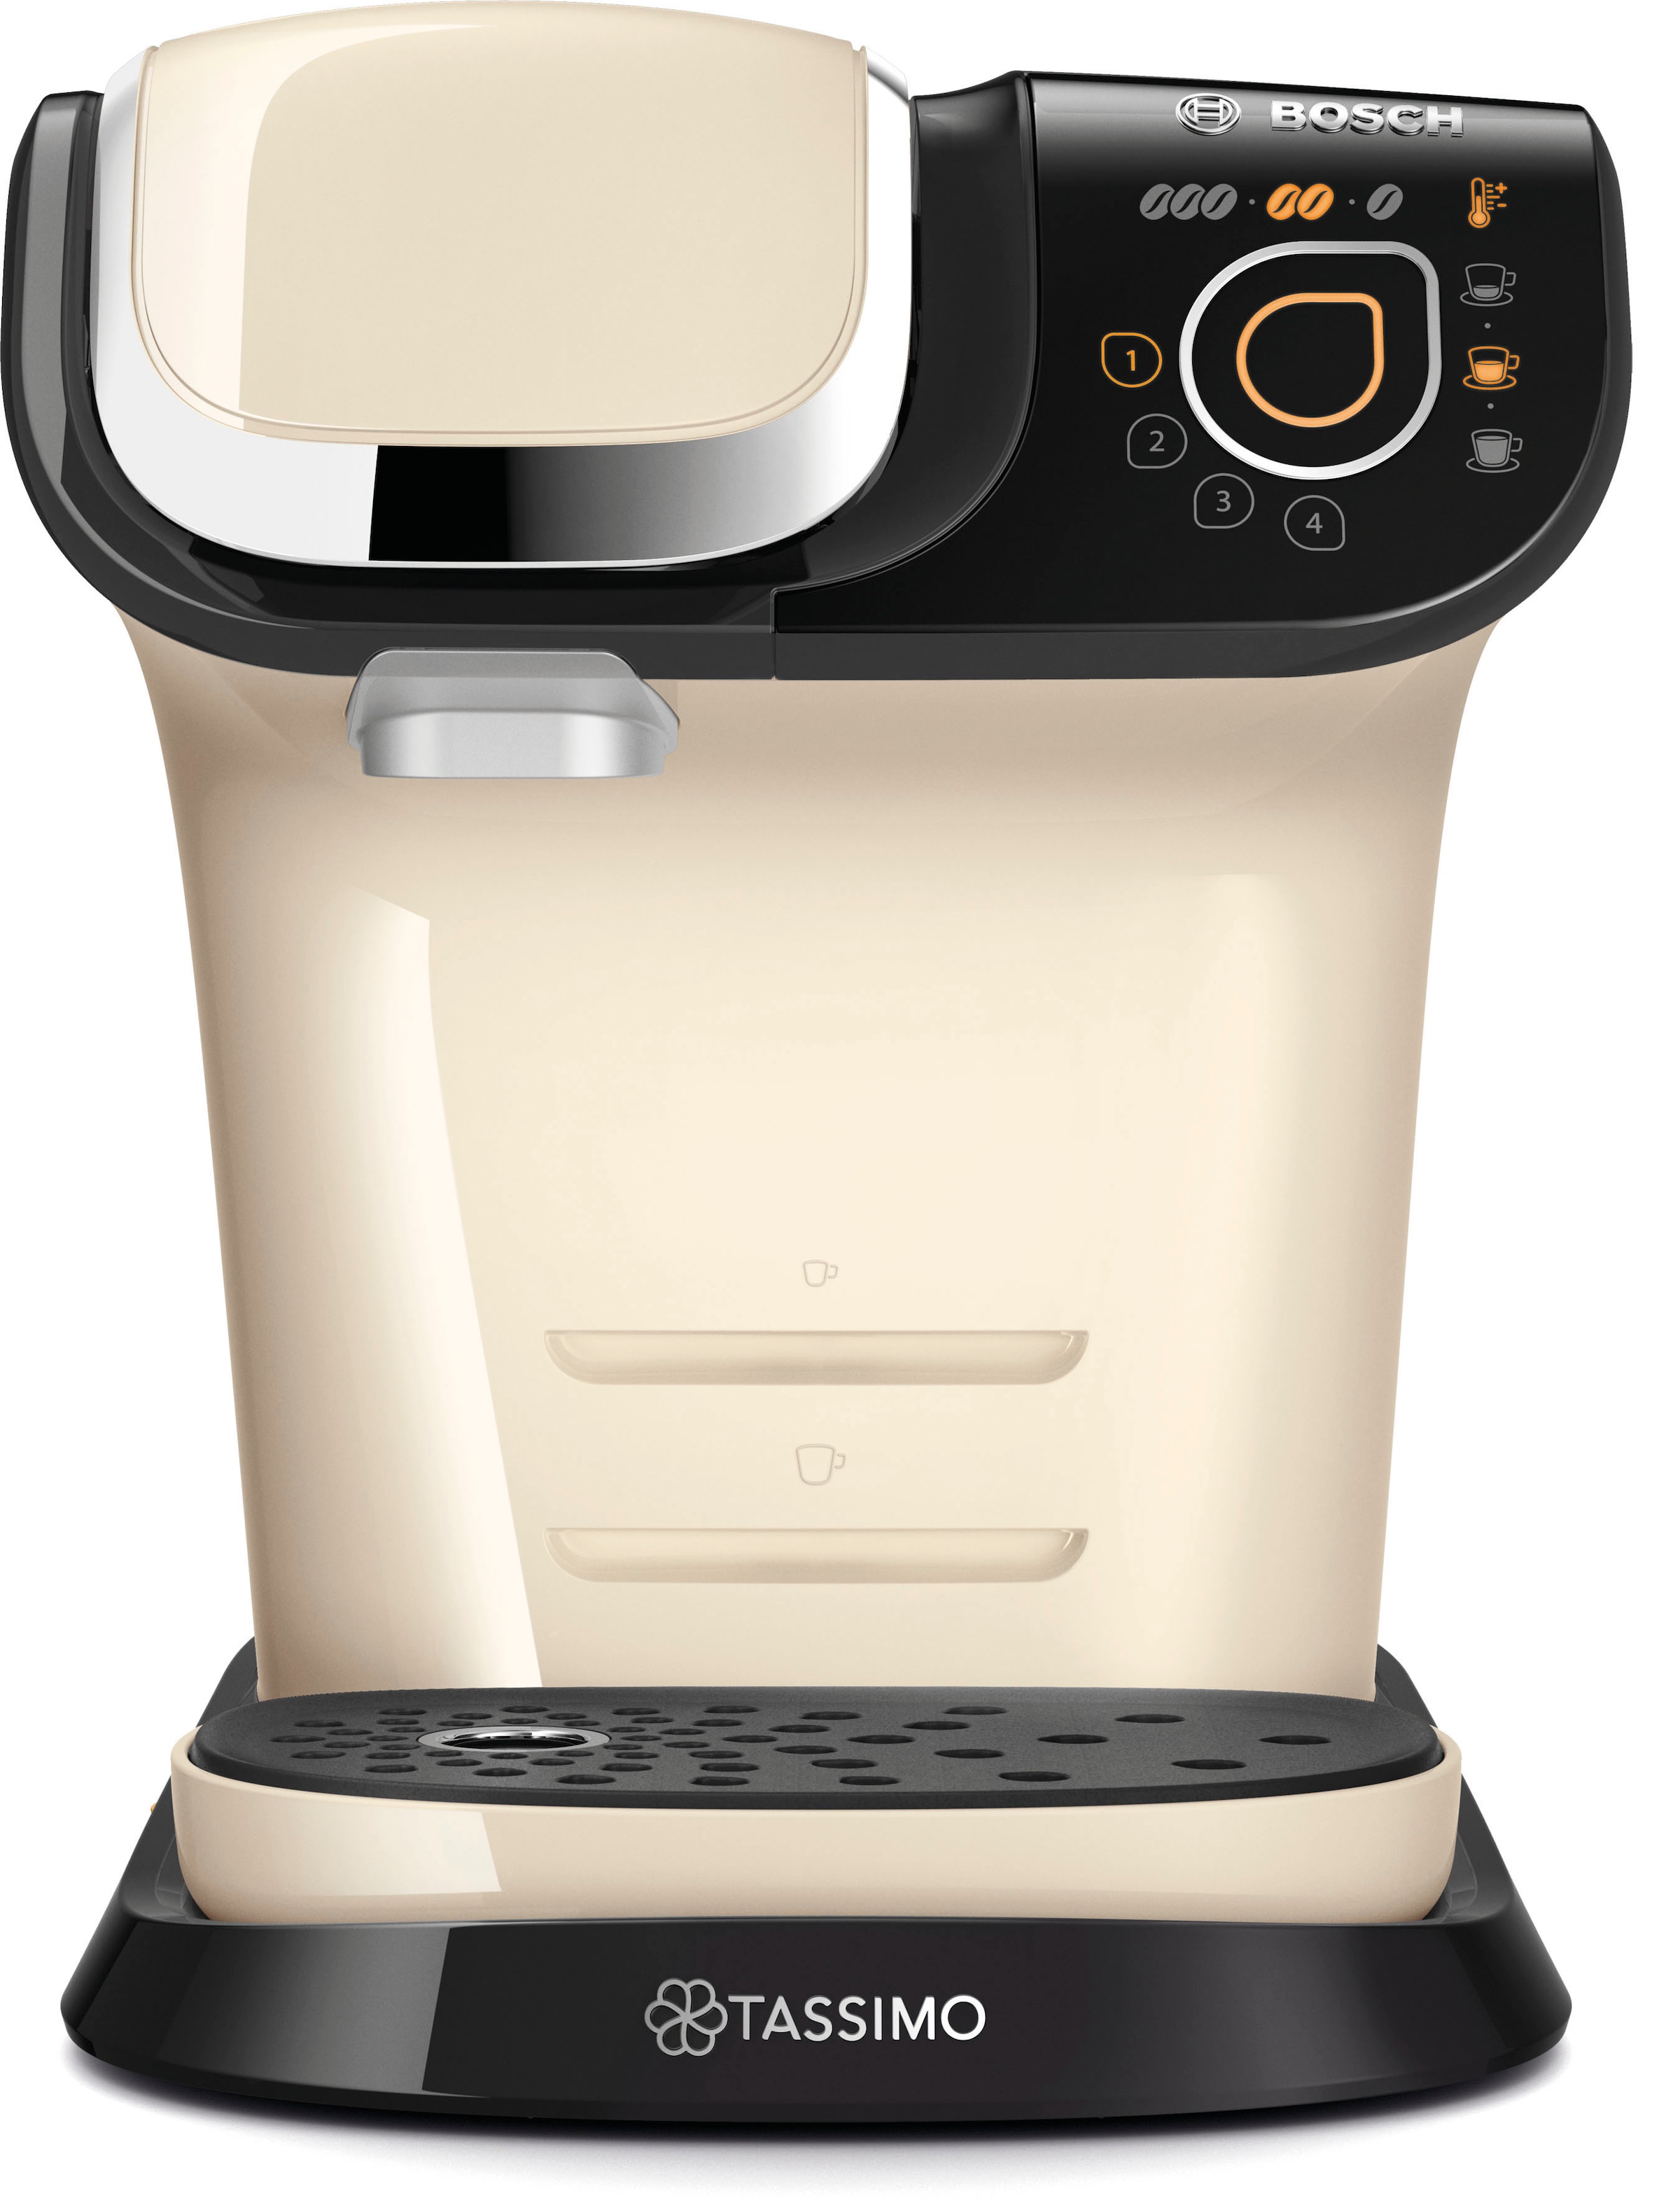 TASSIMO Kapselmaschine »My Way 2 TAS6507, Personalisierung, über 70 Getränke«, mit Wasserfilter, inkl. 2 Gläser »by WMF« im Wert von 9,99 € UVP